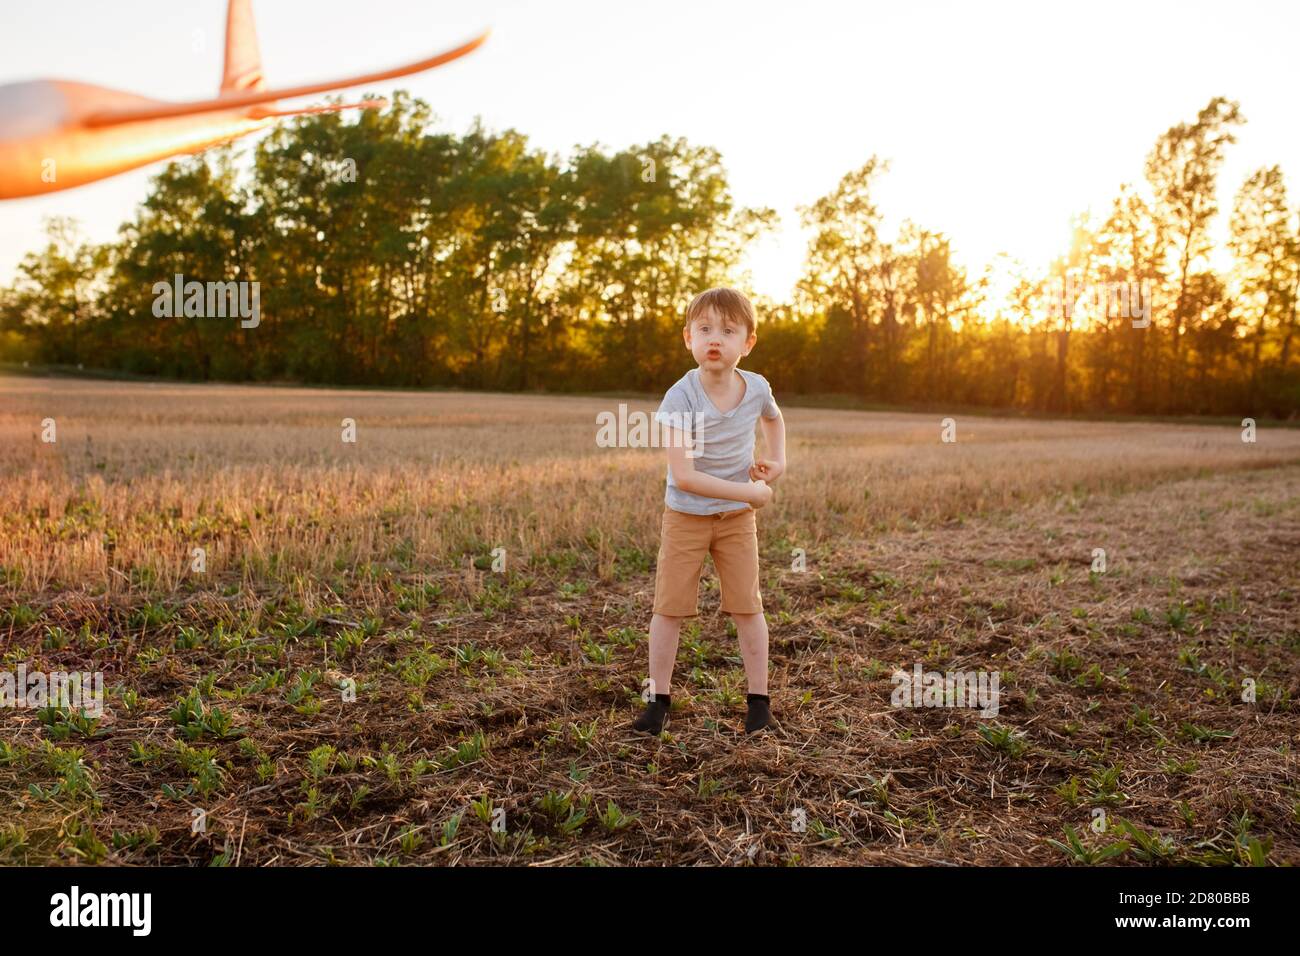 Un enfant heureux court avec un avion jouet sur un fond de coucher de soleil sur un champ. Le concept d'une famille heureuse. Rêves d'enfance Banque D'Images